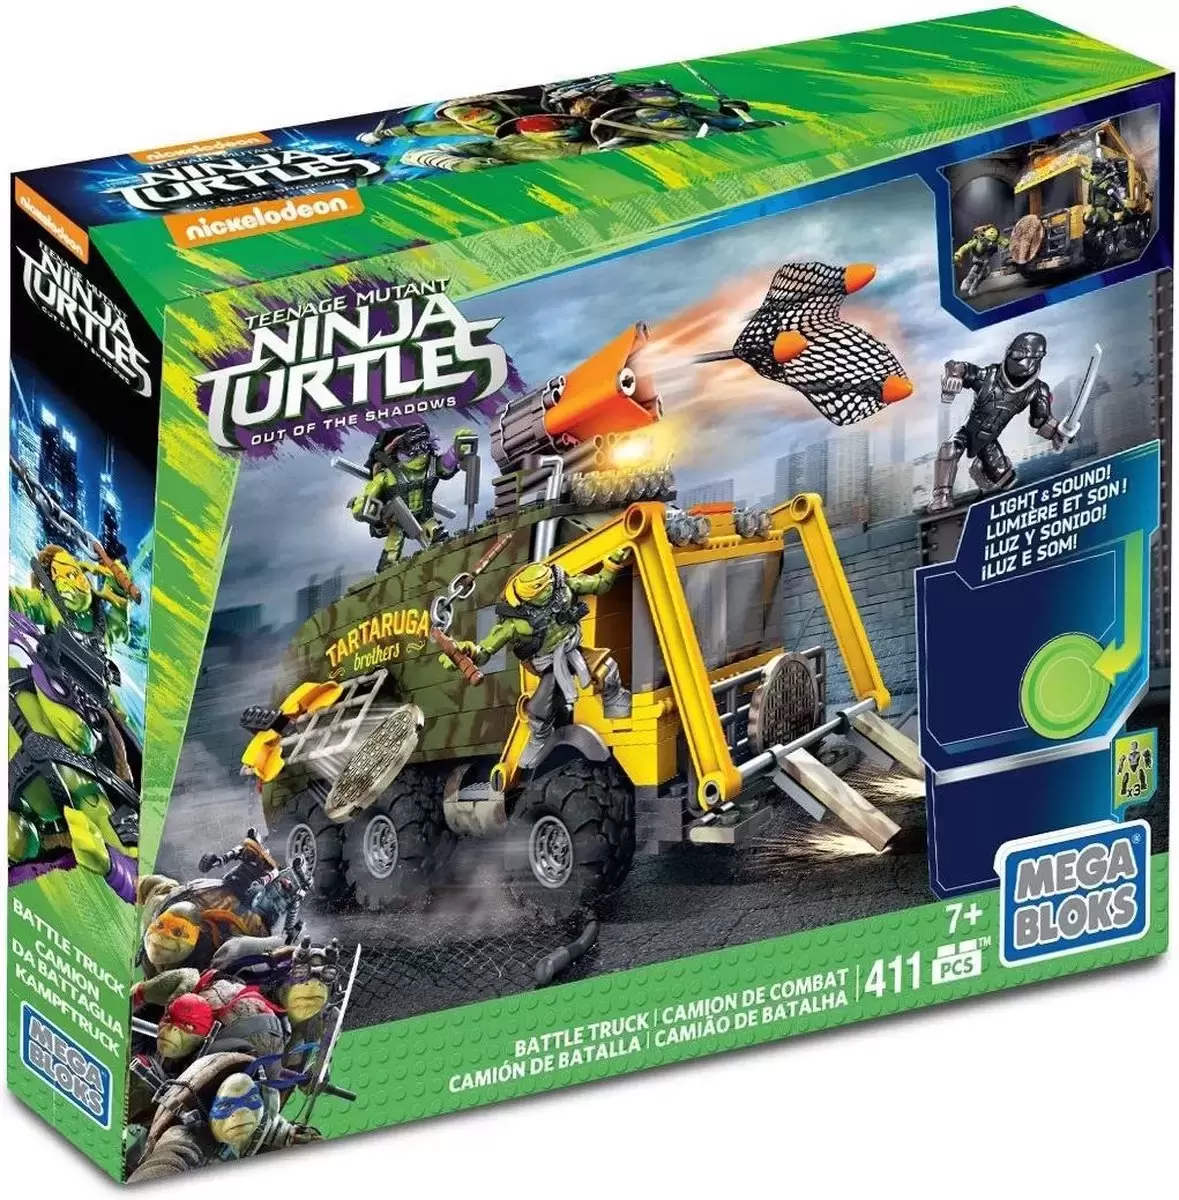 Teenage Mutant Ninja Turtles Mega Bloks - Battle Truck